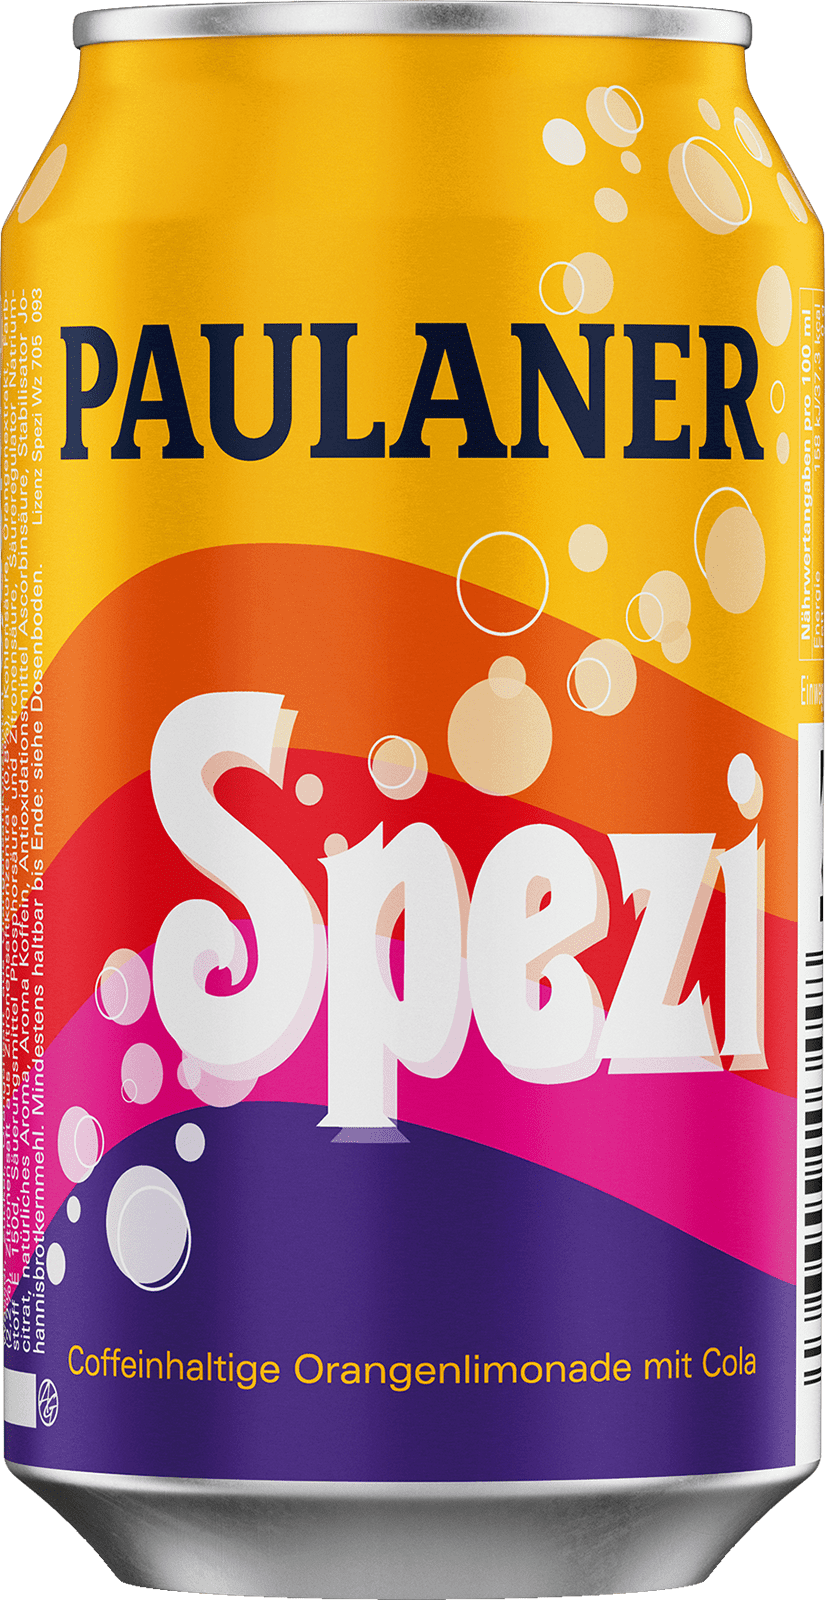 Paulaner Spezi (1 x 0.33 l)